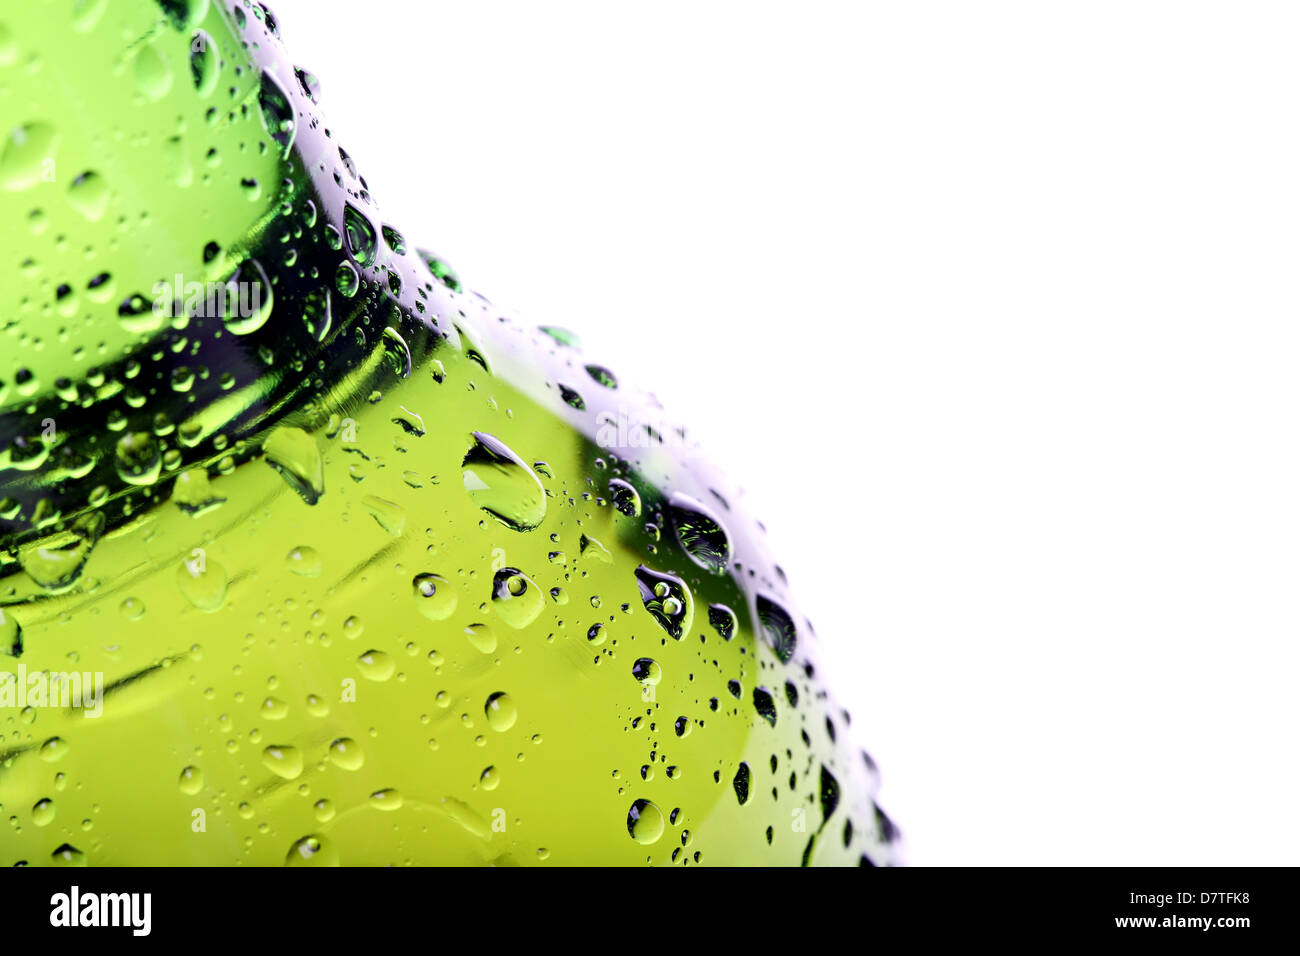 Bouteille de bière résumé libre, vert bouteille humide avec de l'eau gouttelettes, limited 6. Banque D'Images